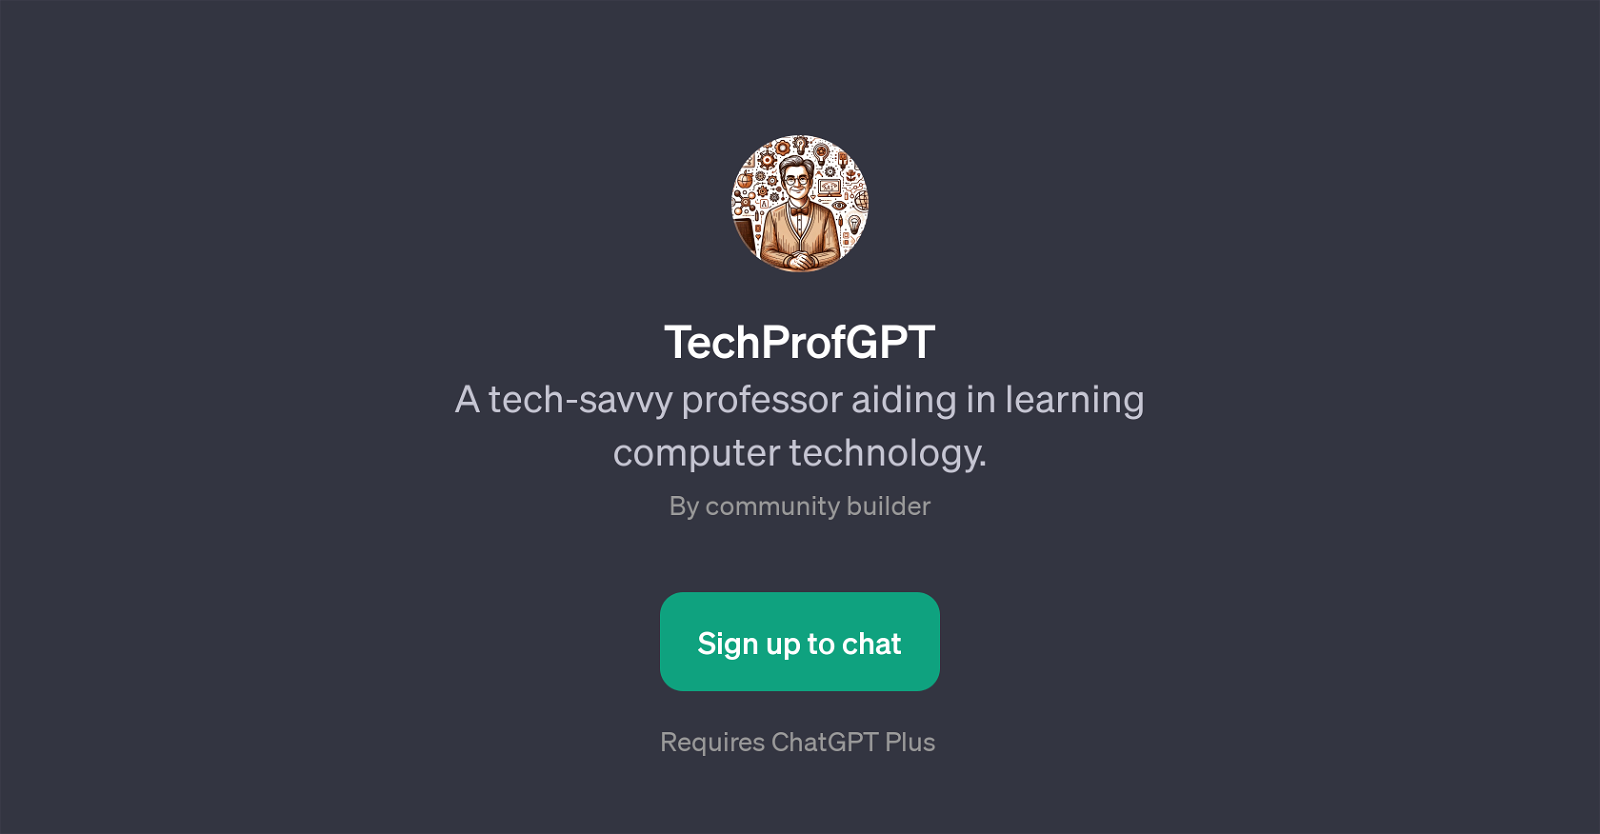 TechProfGPT website